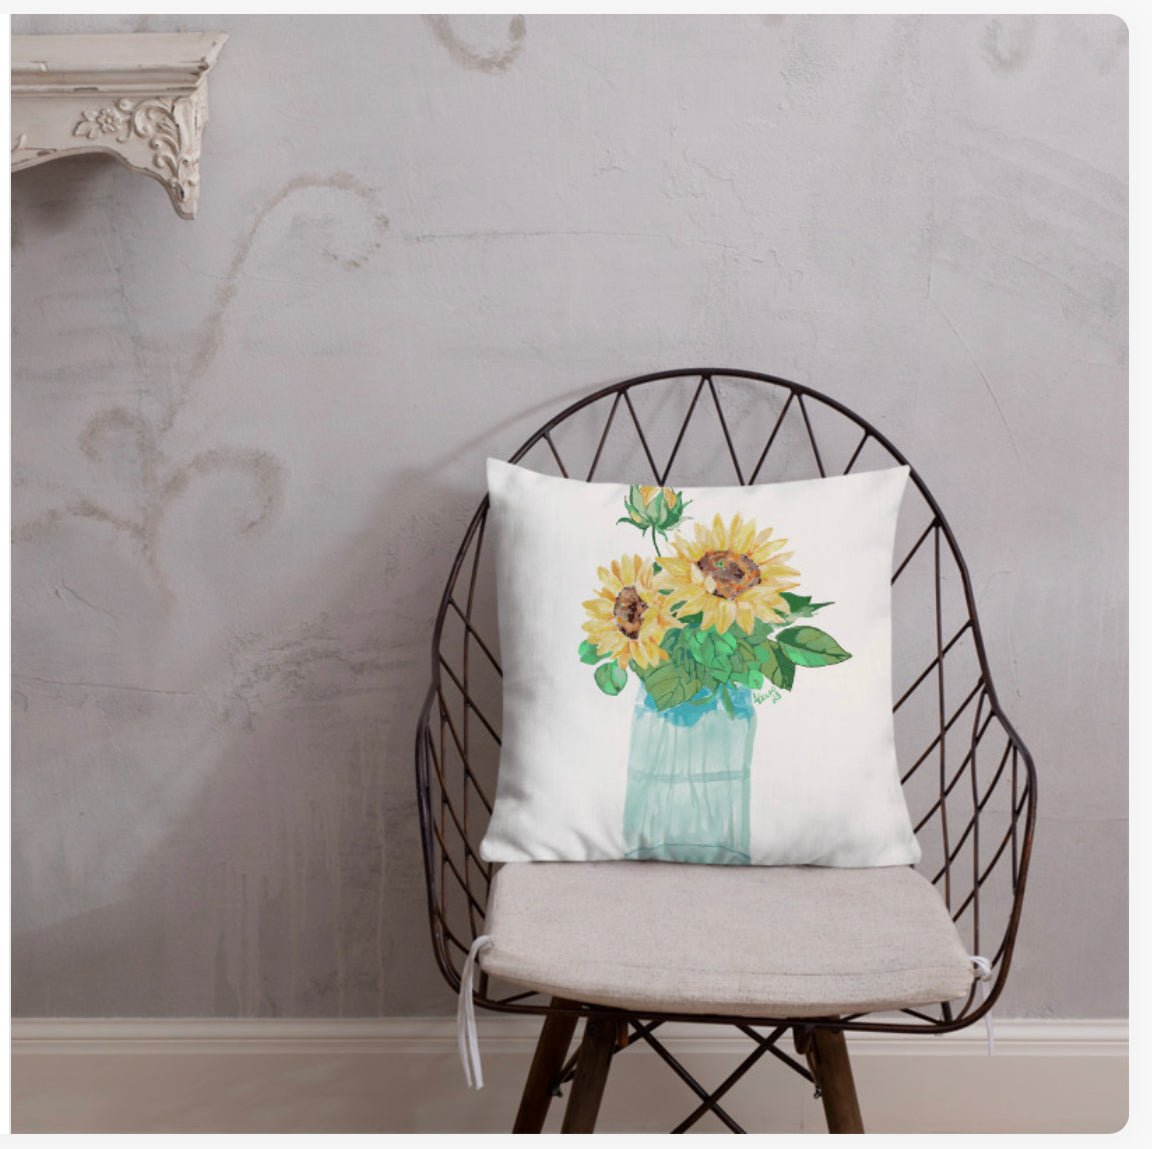 Floral Vase Premium Pillow - Blue Cava